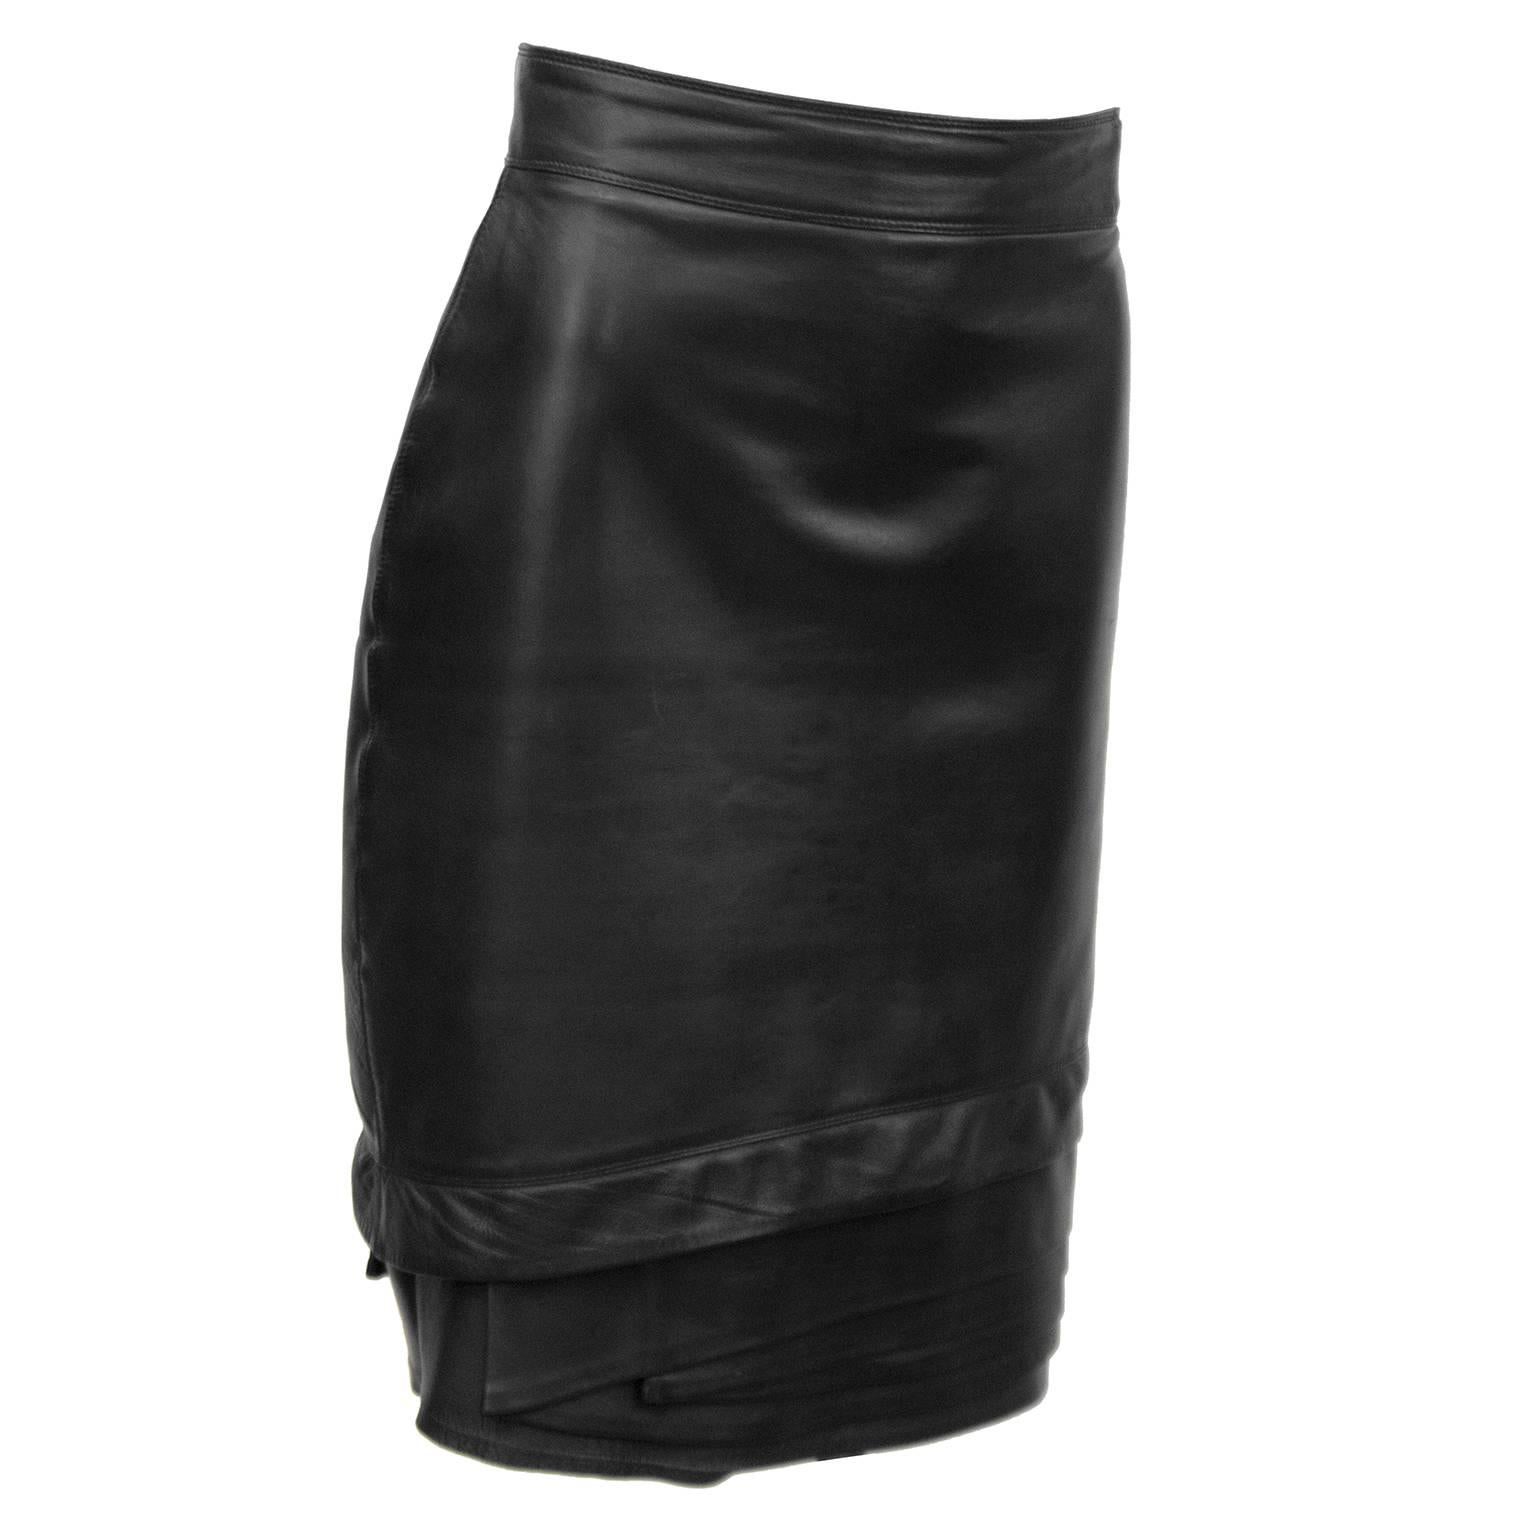 Jupe en cuir noir de Gianni Versace des années 1980. La jupe est dotée d'une bande à la taille et d'un magnifique détail à l'ourlet. Fermeture éclair au dos, entièrement doublée. En parfait état. 

Taille 28